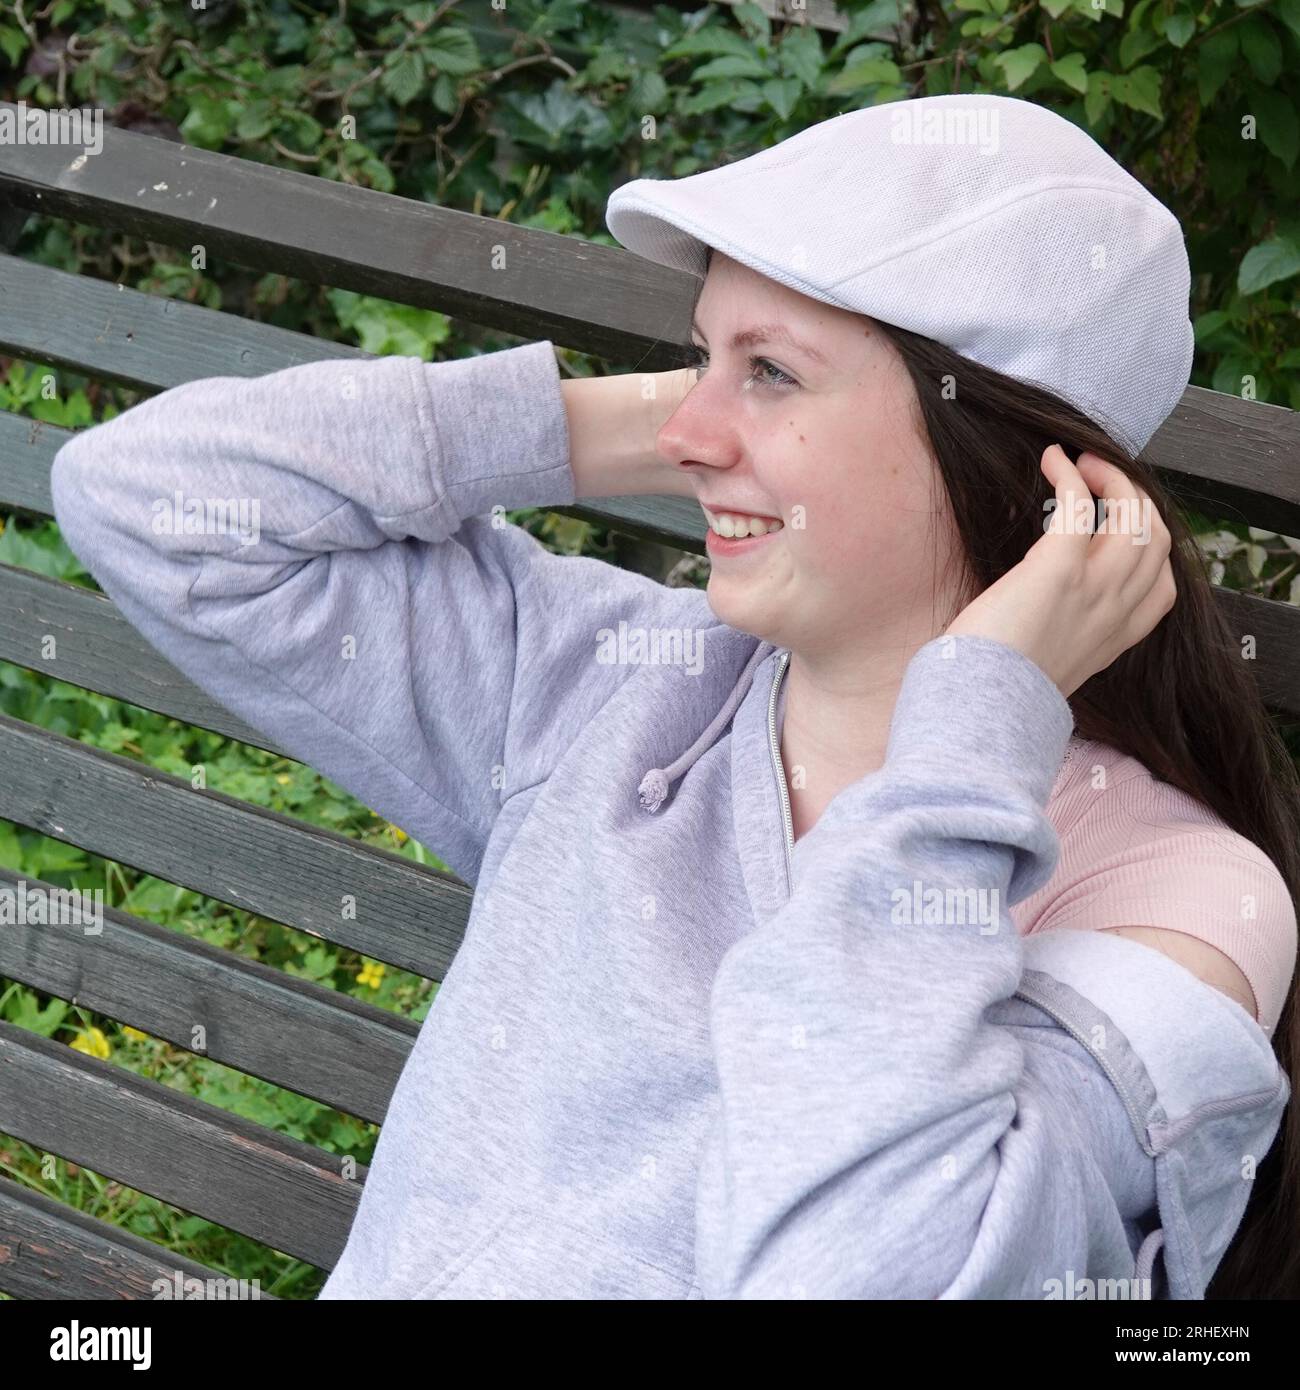 Ein Mädchen im Teenageralter mit einer weißen Paddy-Kappe sitzt, lächelt breit und berührt ihr dunkelbraunes Haar. Stockfoto